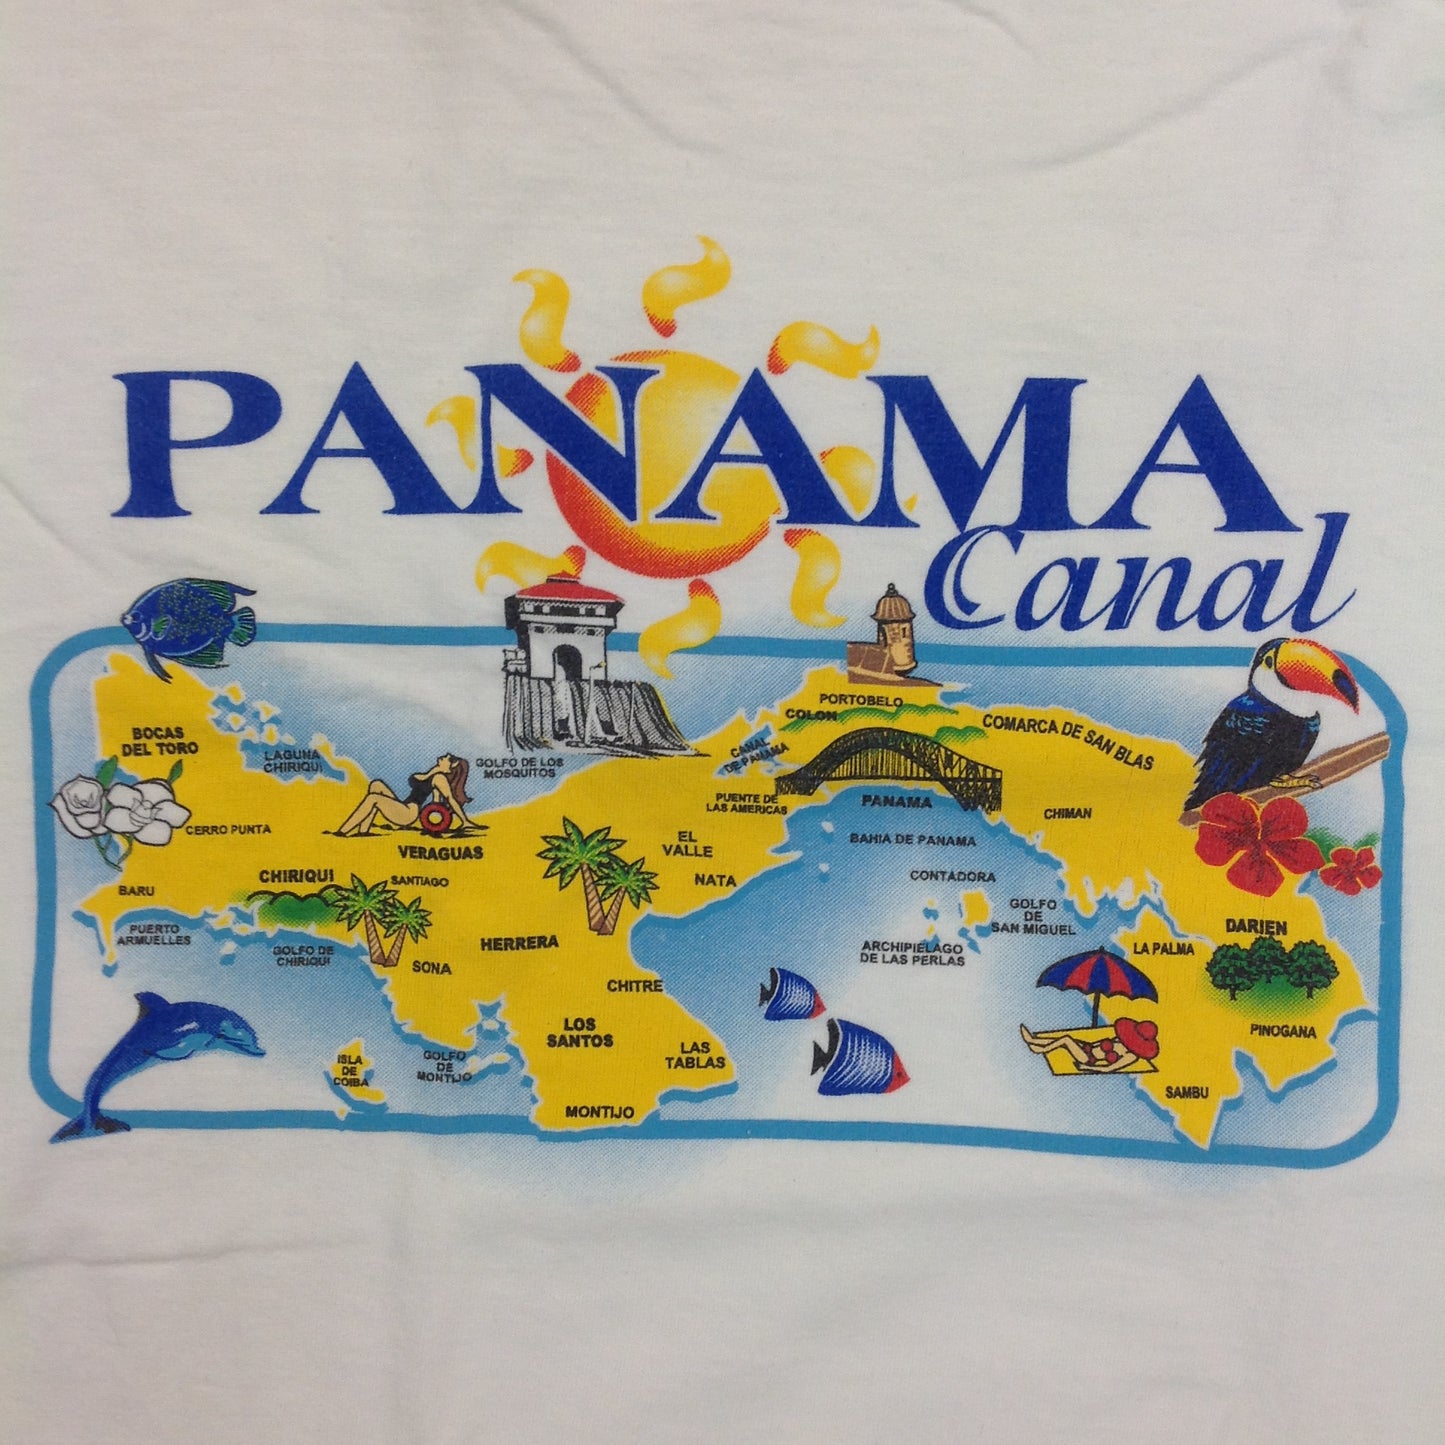 Vintage Tropic Plus Cotton Souvenir White Men's Small Short-Sleeve Panama Canal Points of Interest T-Shirt